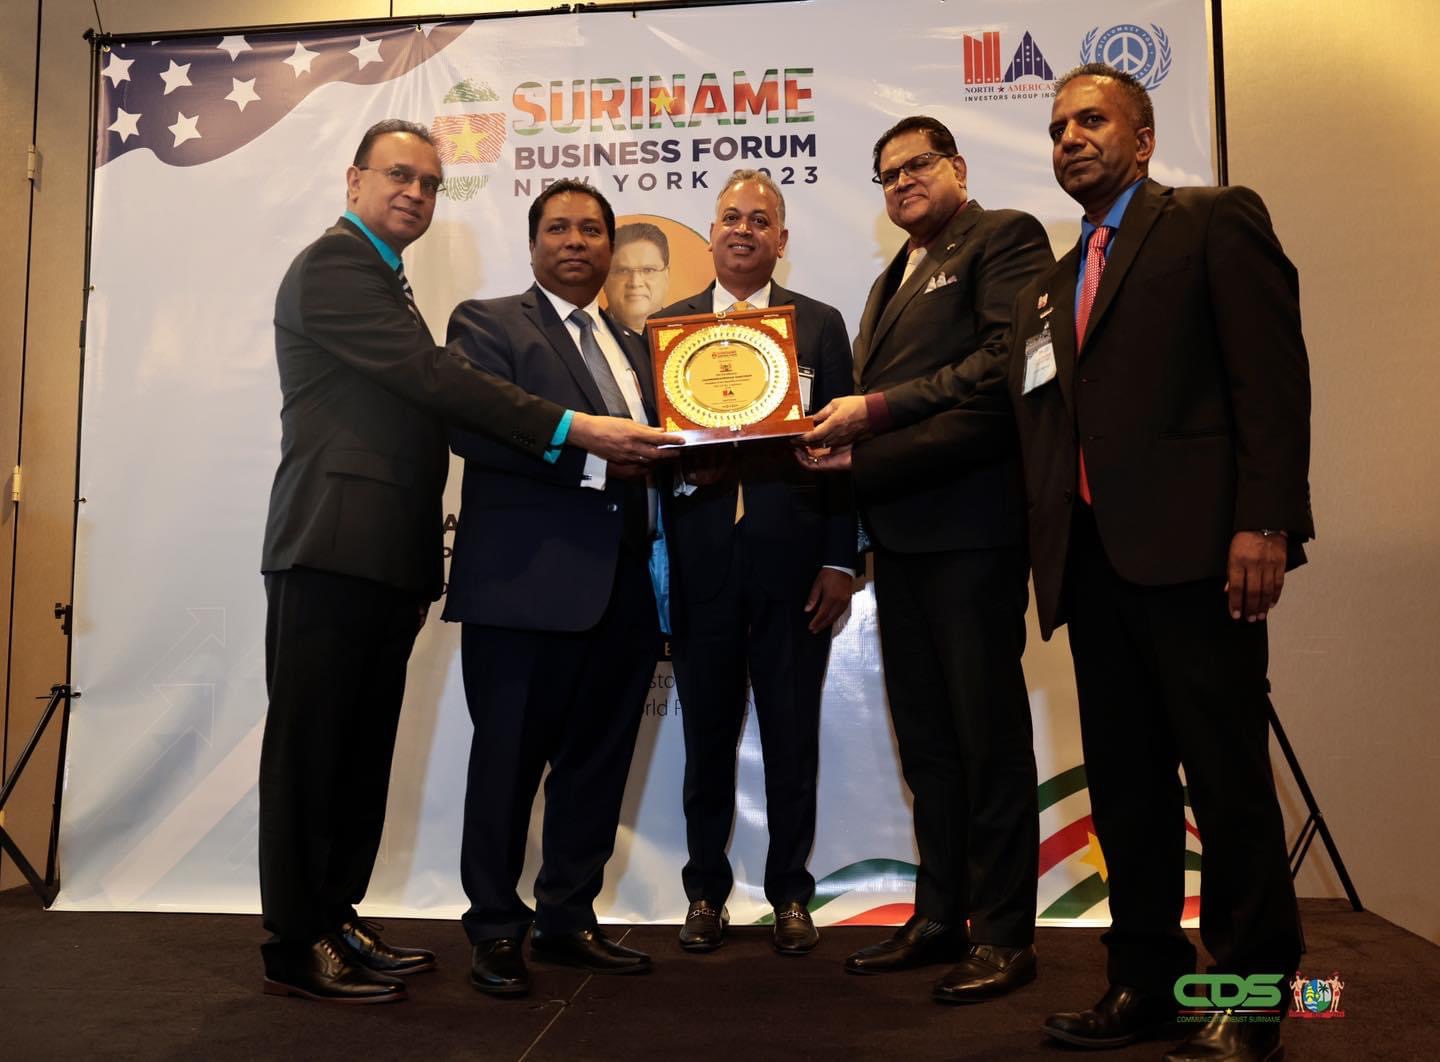 eregast op het Suriname Business Forum